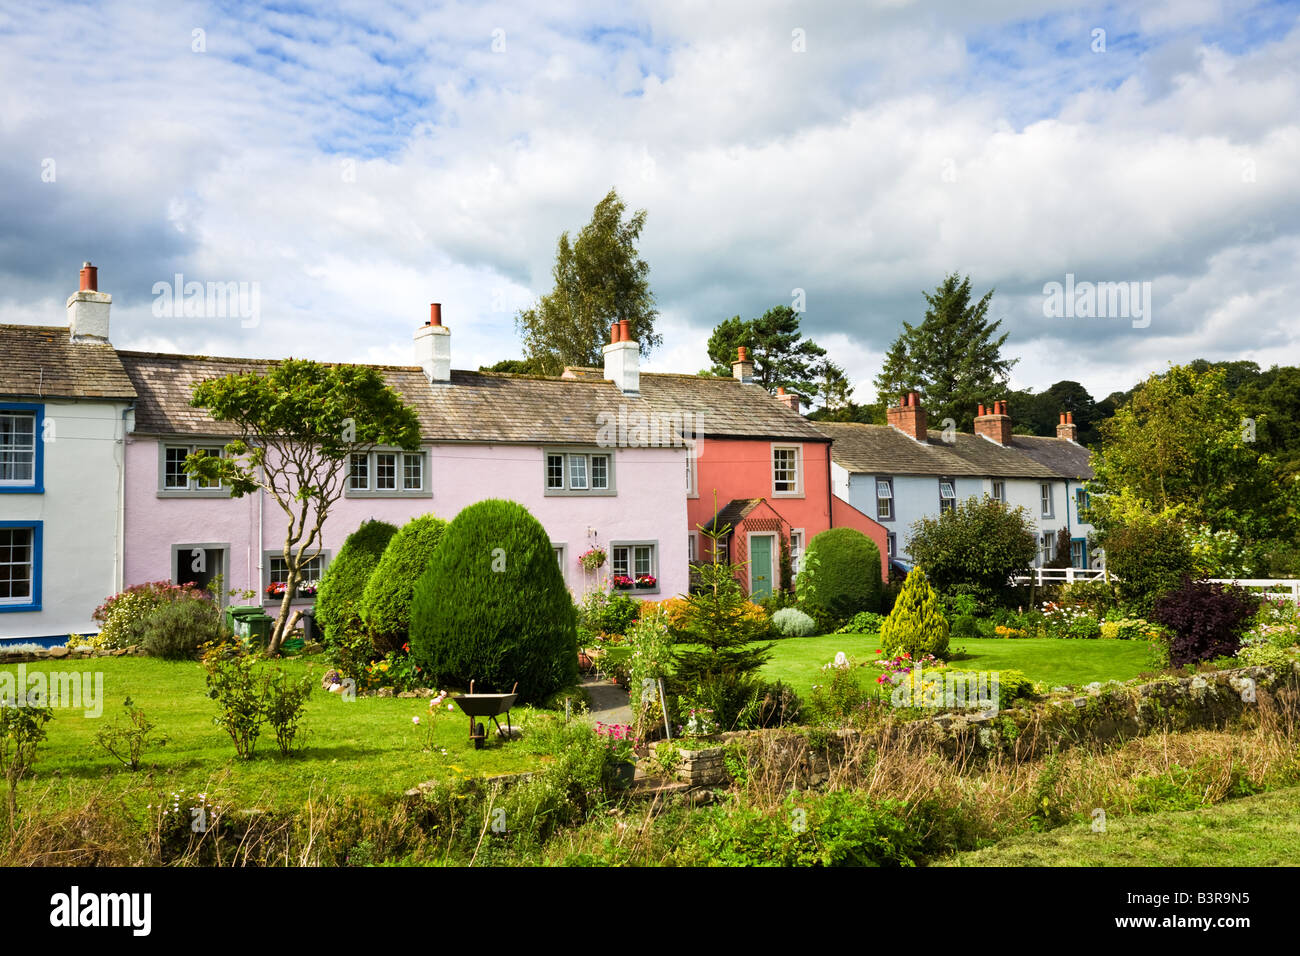 Piuttosto dipinte di casette a schiera nel villaggio di Caldbeck, nel distretto del lago, Cumbria, England, Regno Unito Foto Stock